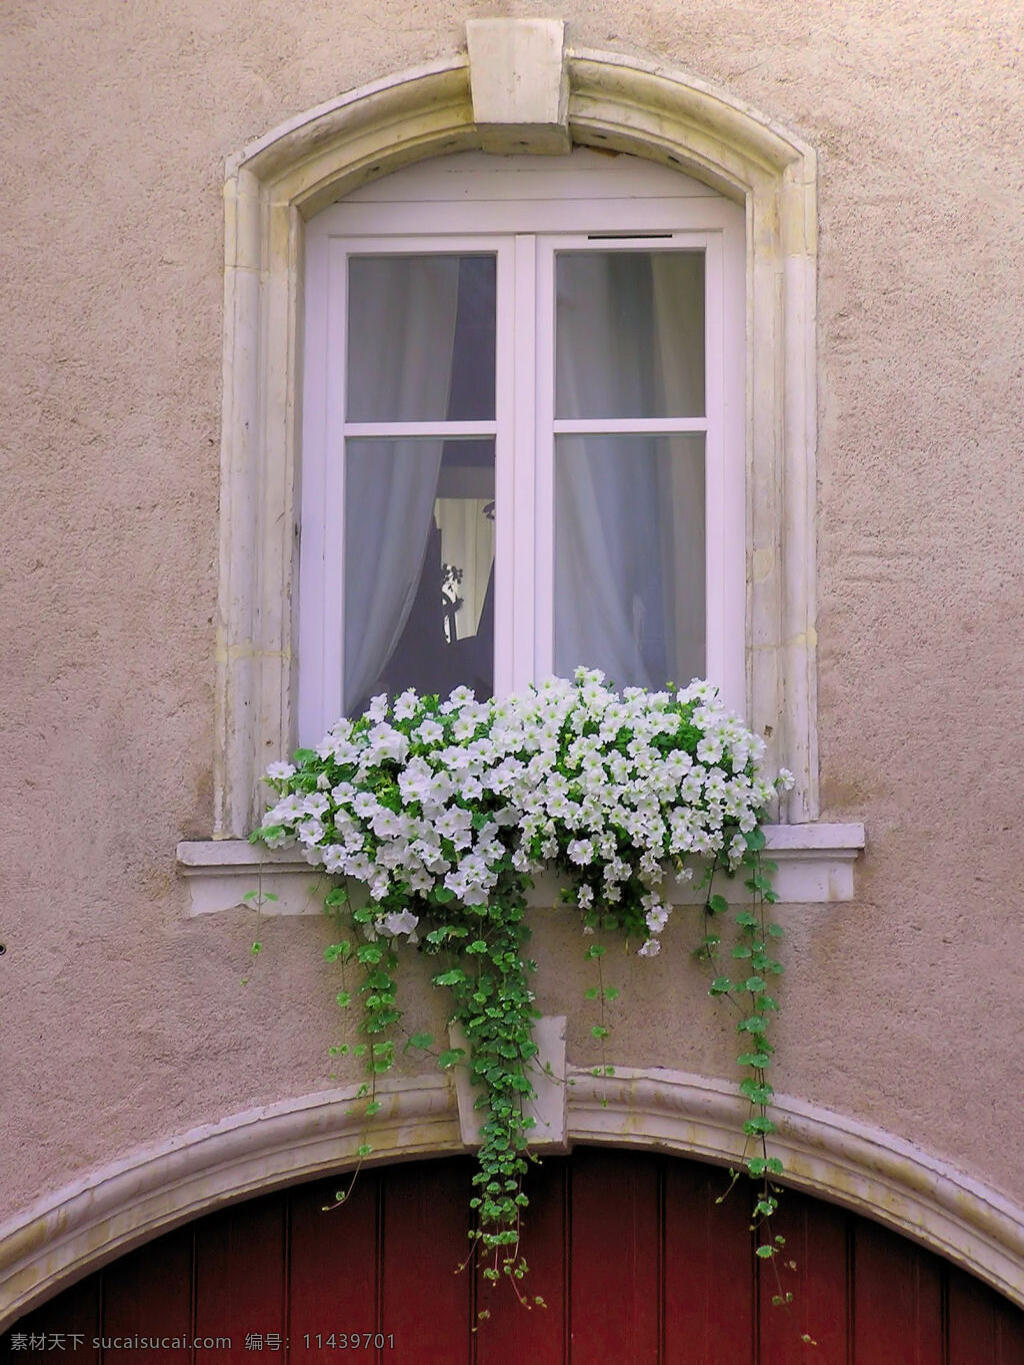 窗户与花台 窗户 花台 欧式 建筑园林 建筑摄影 摄影图库